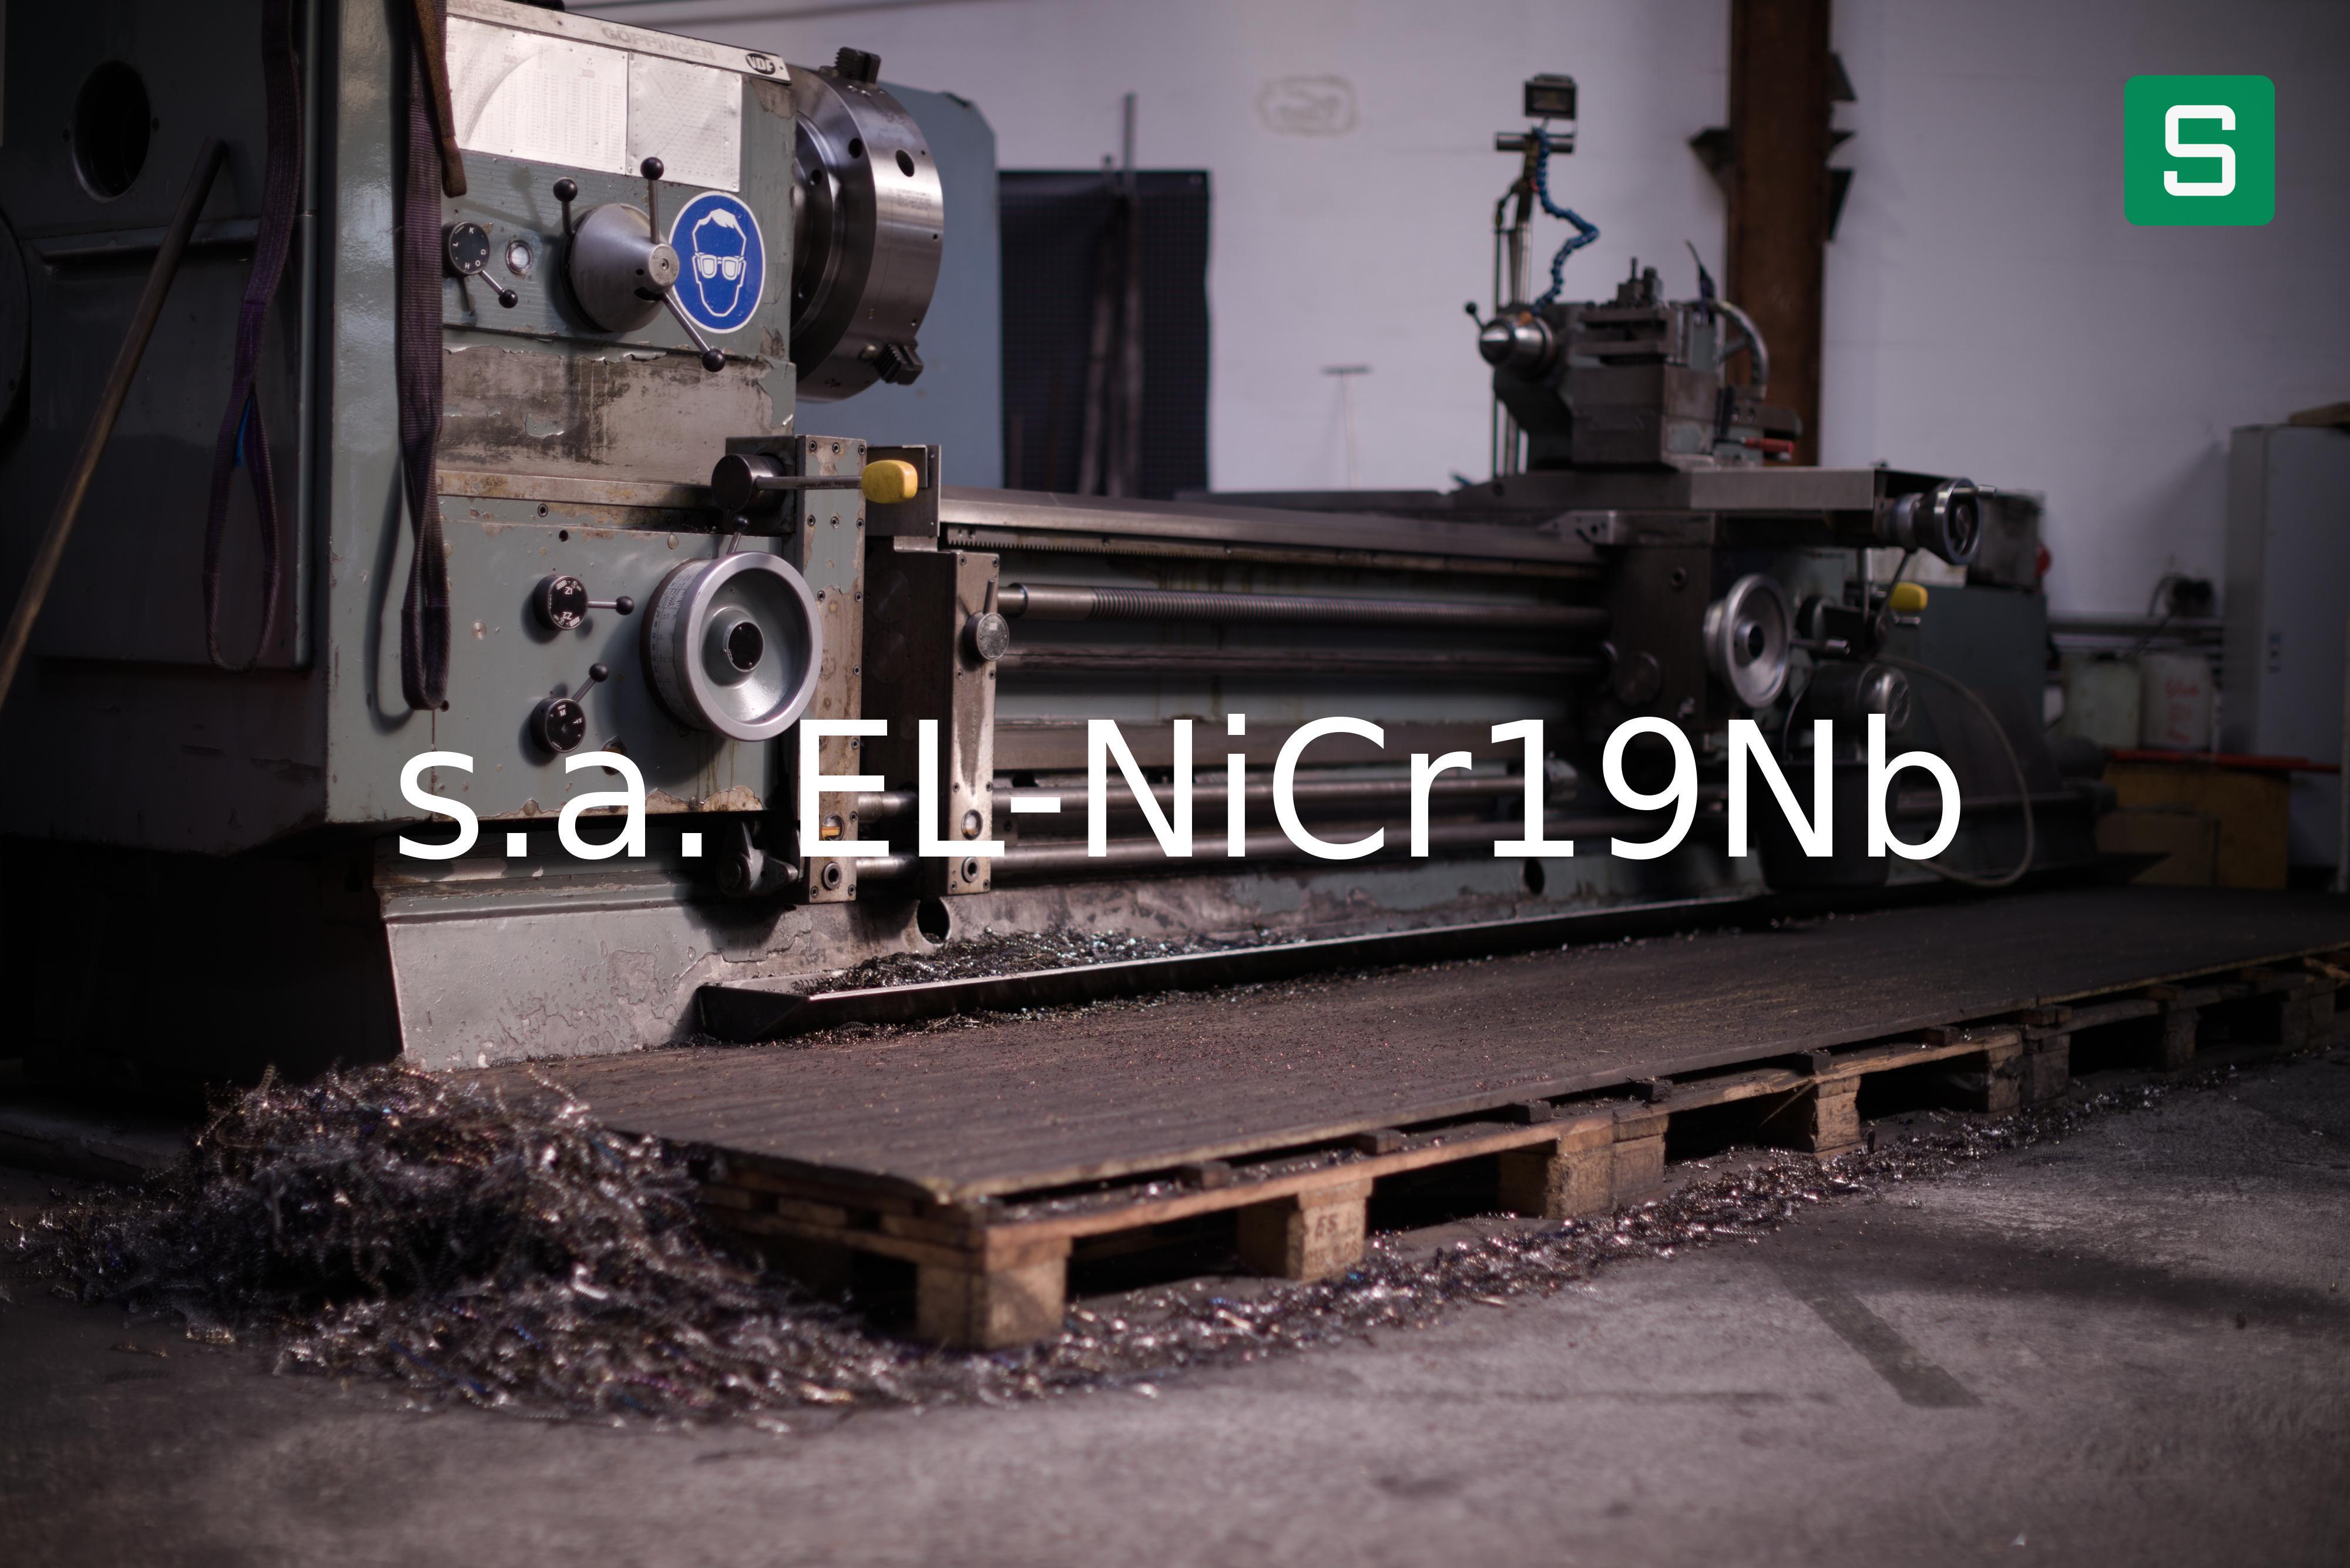 Steel Material: s.a. EL-NiCr19Nb